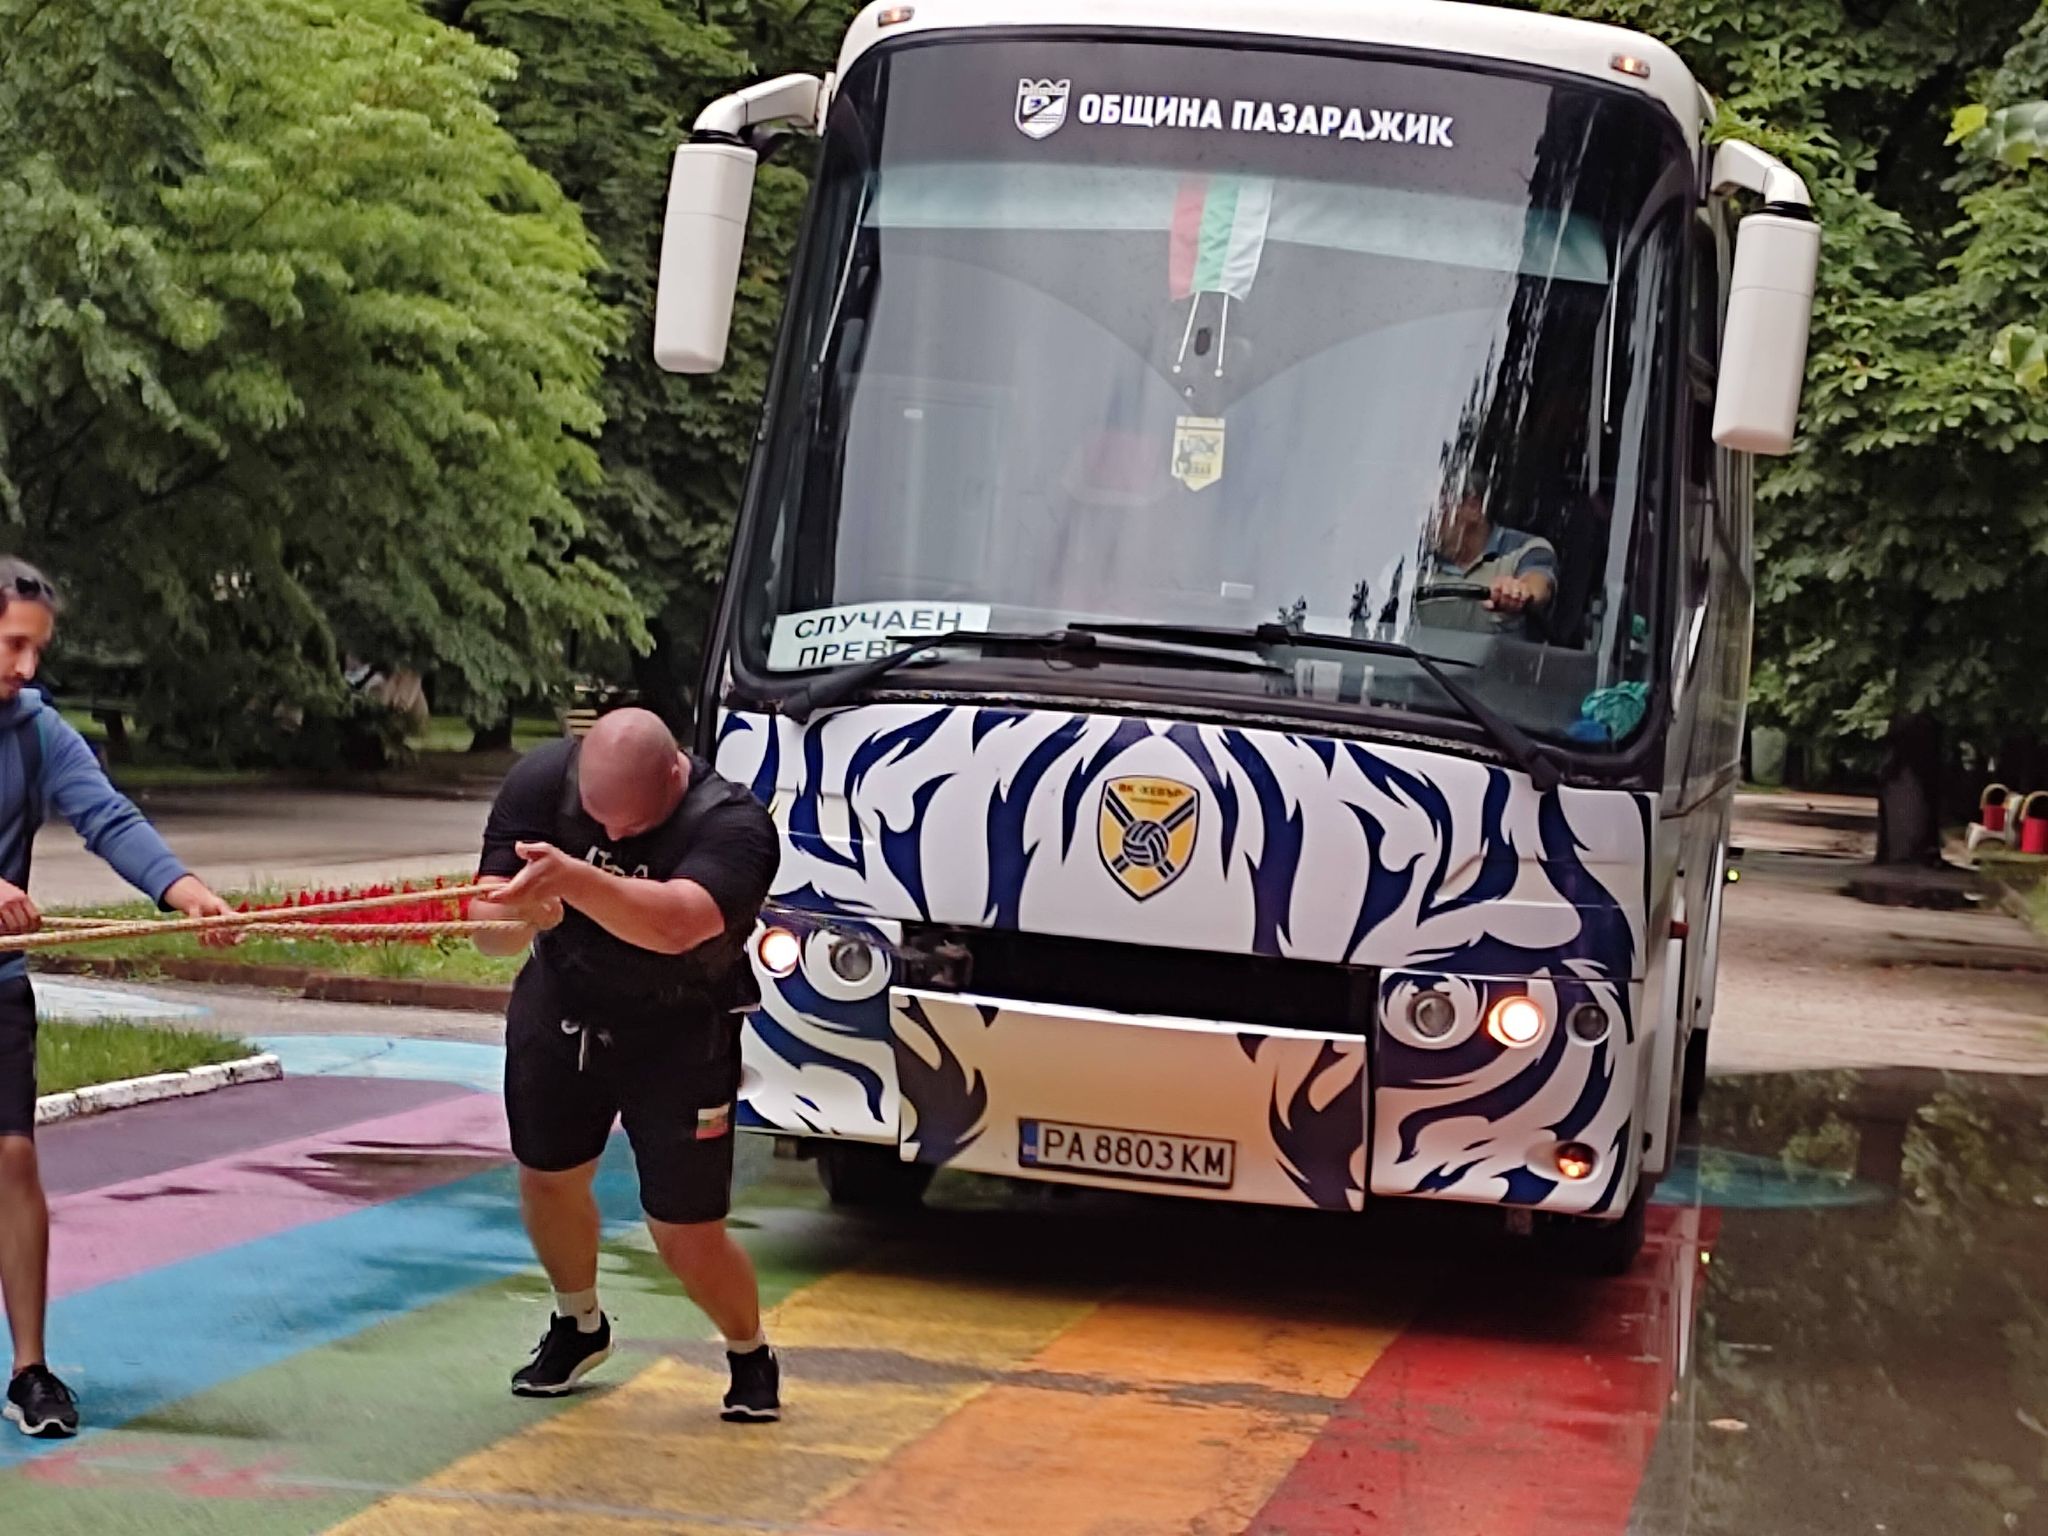 Хебър Бус предостави 13 тонен автобус за състезанието в подкрепа на 23-годишния Дани от Пазарджик